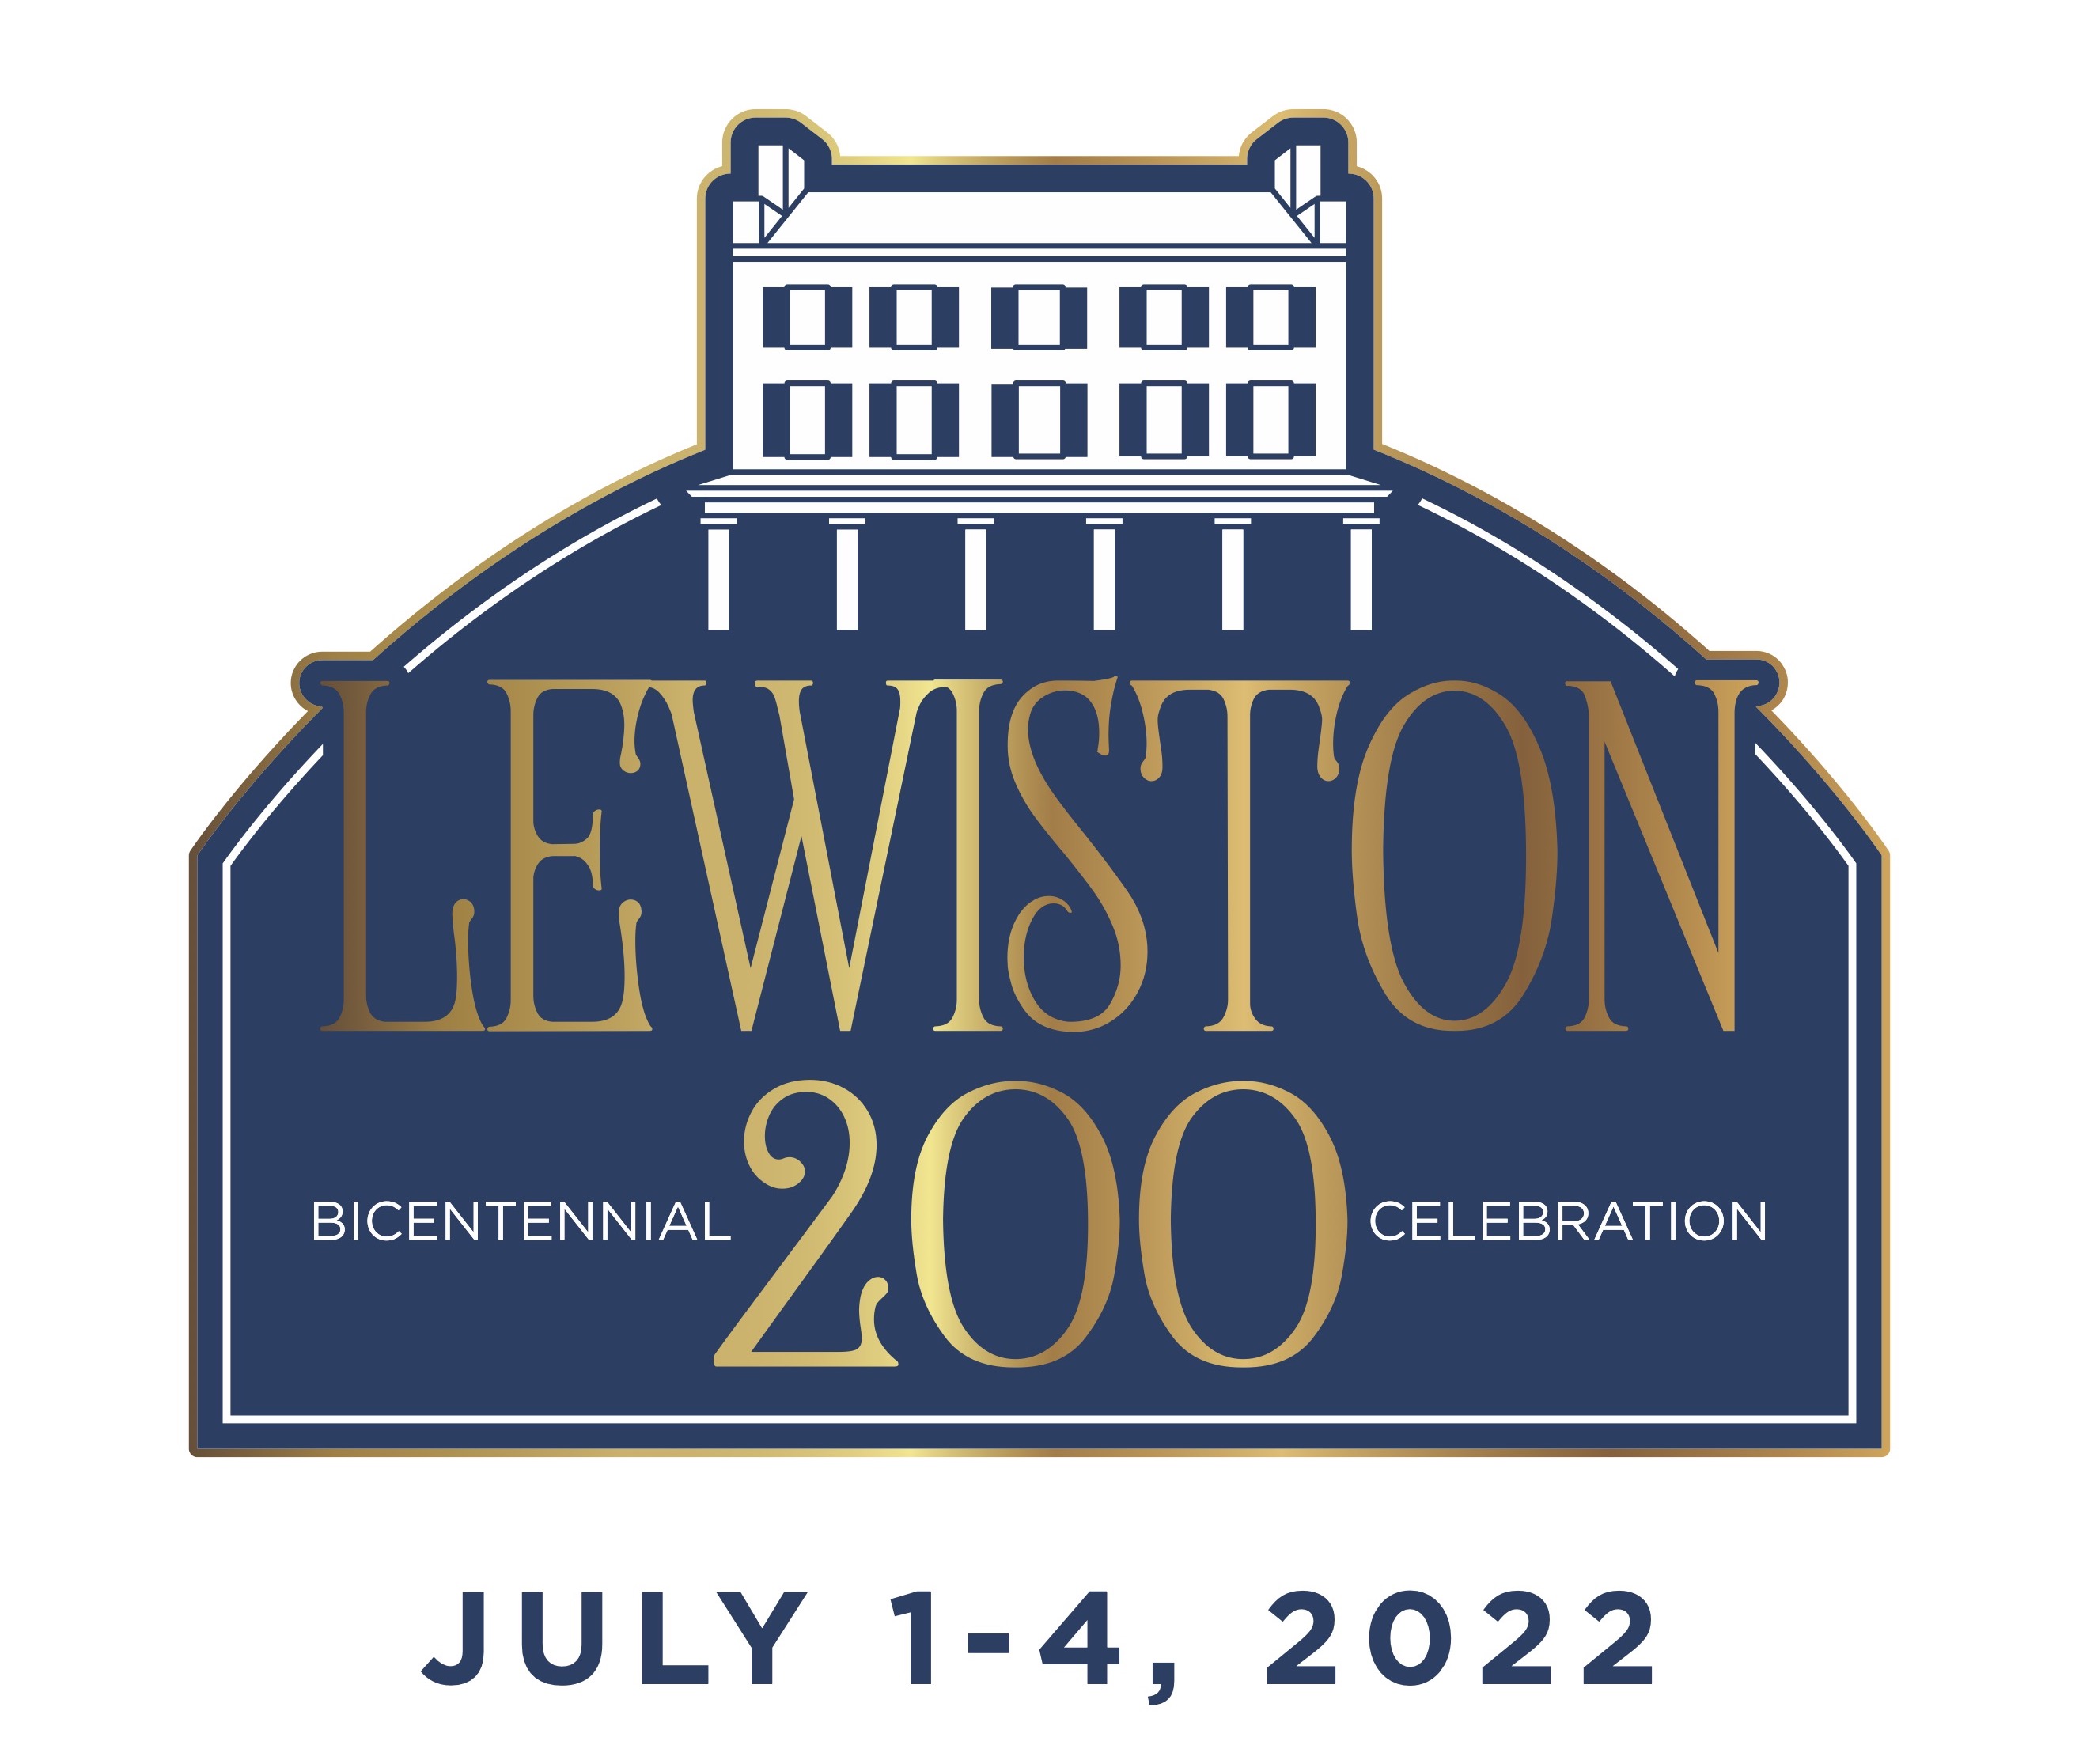 Lewiston bicentennial logo